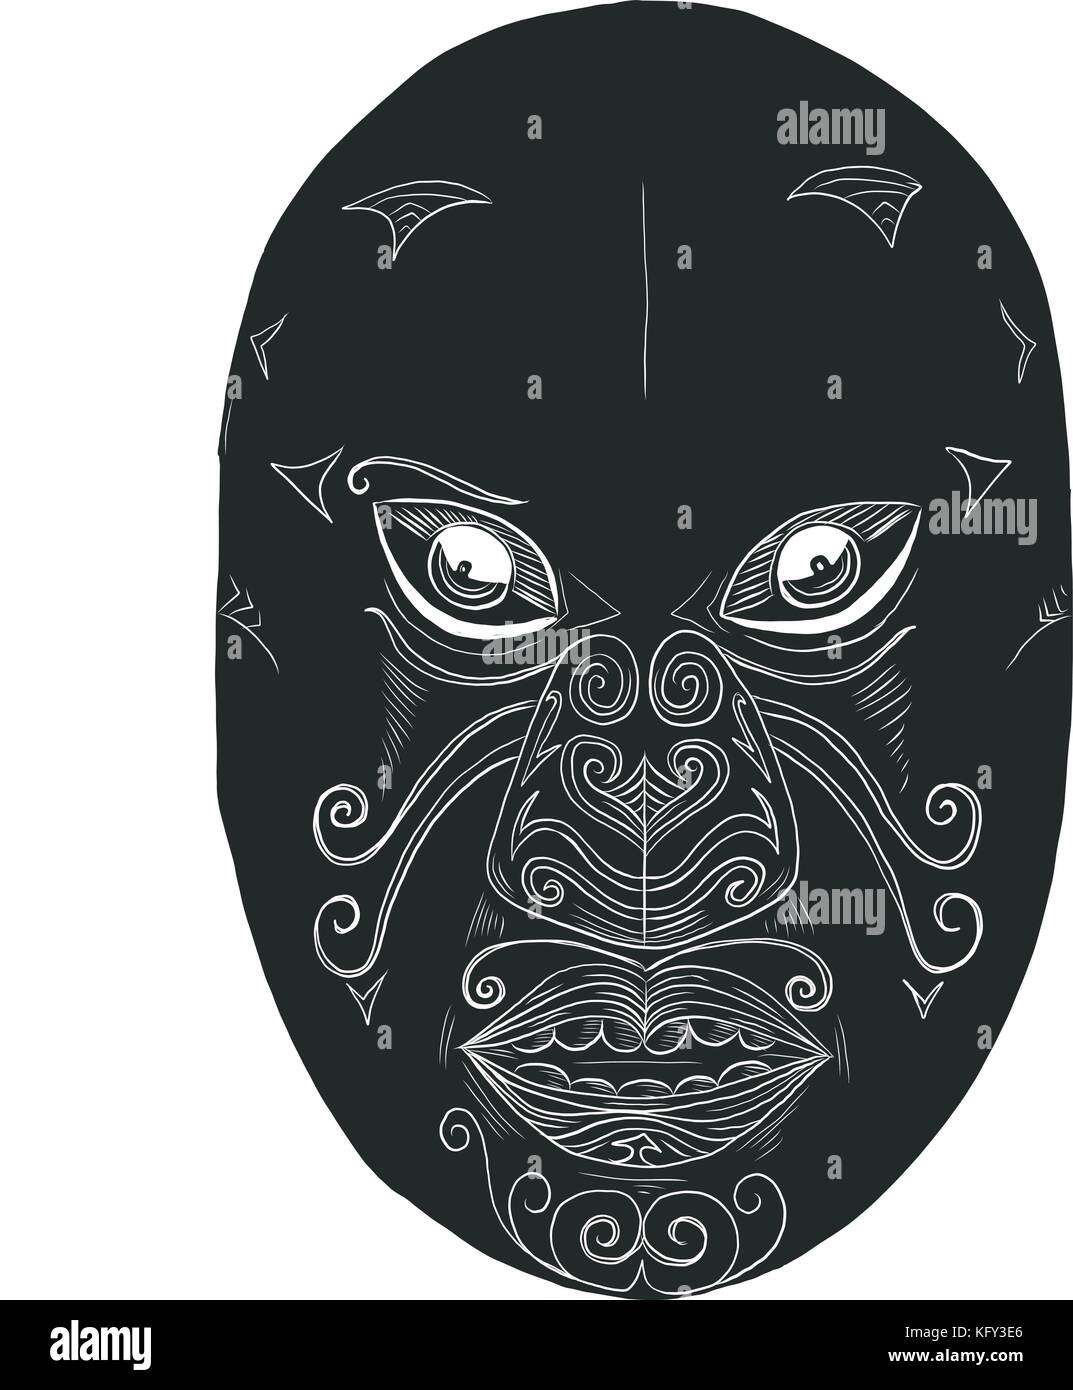 Stile scratchboard illustrazione di una maschera maori cercando feroce con la bocca aperta e gli occhi sporgente sul fatto scraperboard su sfondo isolato. Illustrazione Vettoriale